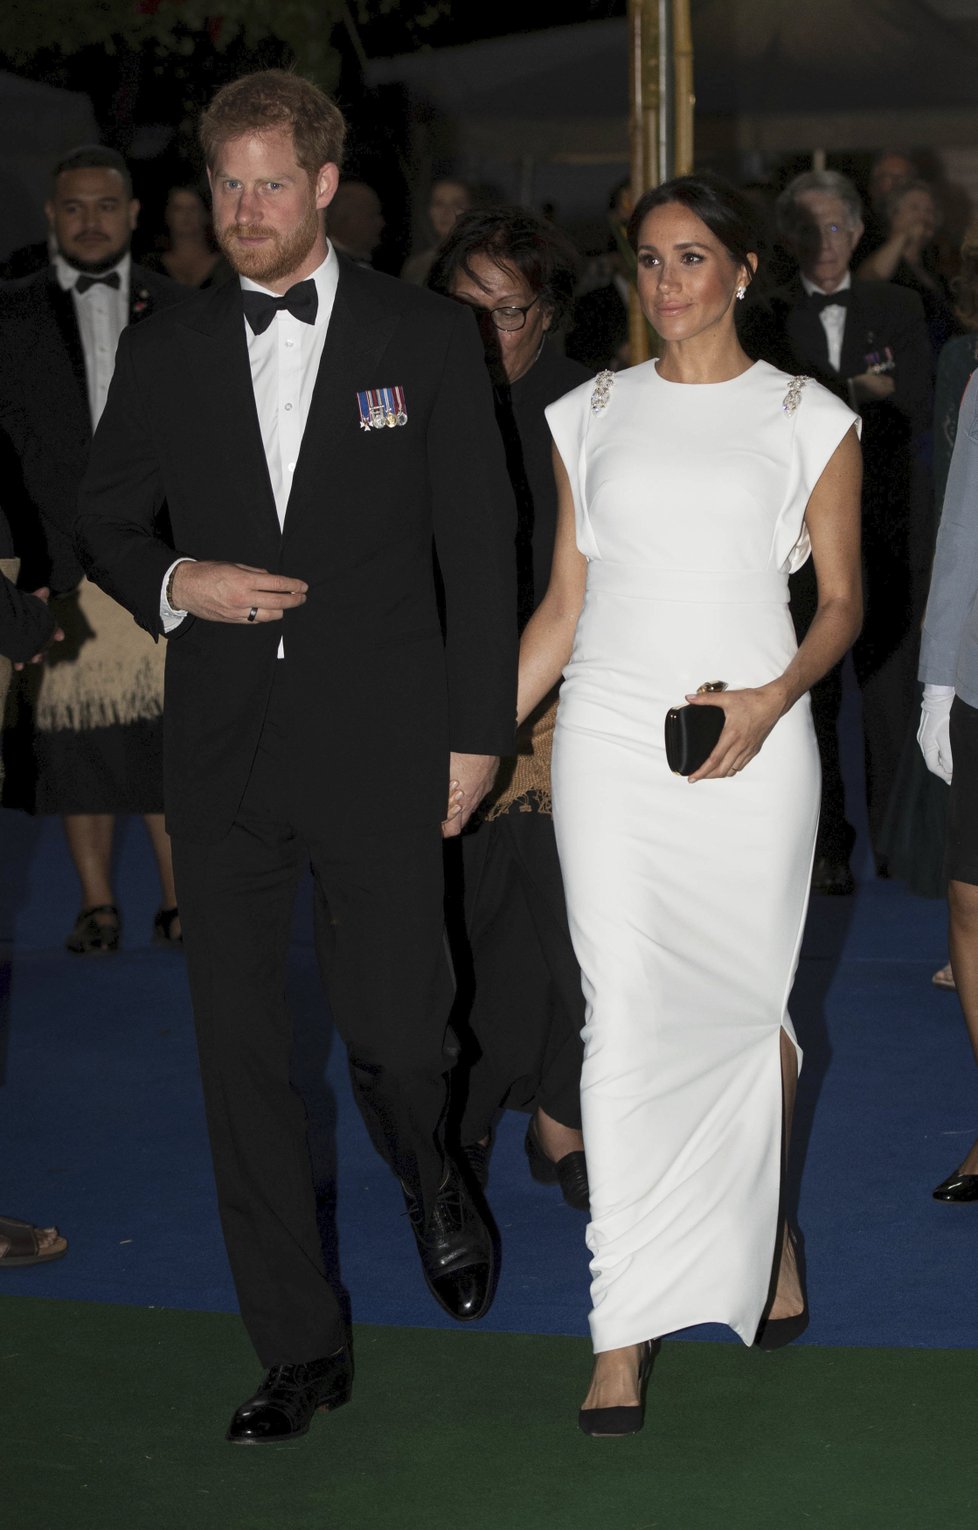 Princ Harry a vévodkyně Meghan přicházejí na státní večeři na ostrově Tongo.